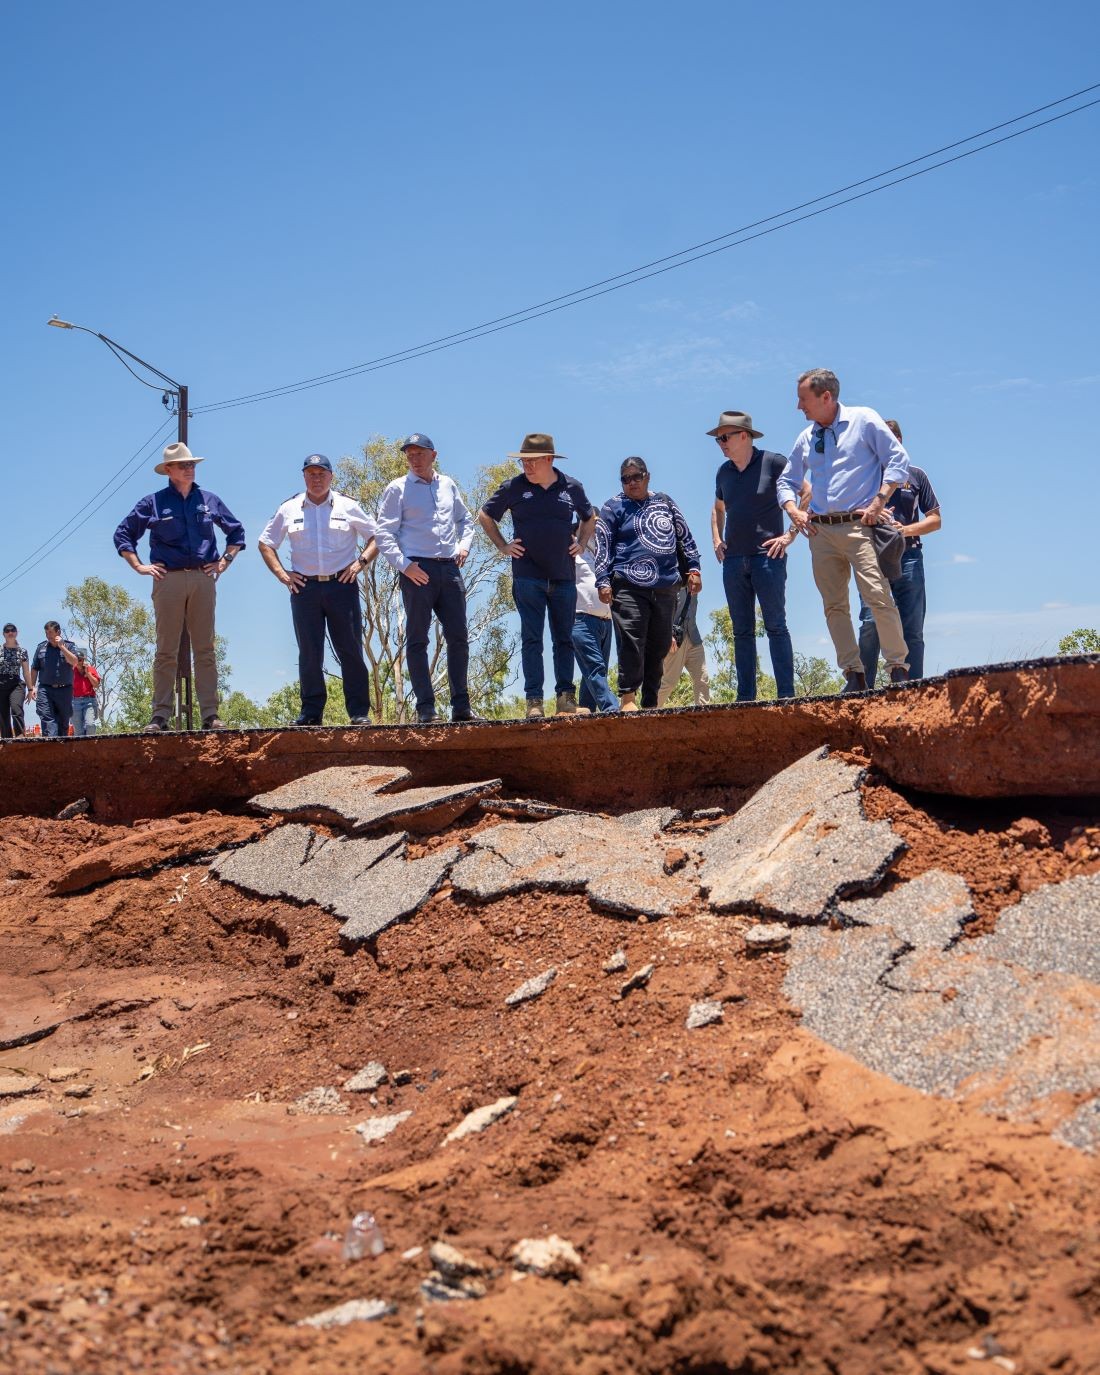 Ngày 9/1, Thủ tướng Australia Anthony Albanese và Thủ hiến bang Tây Australia Mark McGowan đã đến thăm thị trấn Fitzroy Crossing, thuộc khu vực Kimberley ở bang này, trong bối cảnh khu vực này bị lũ lụt tàn phá nghiêm trọng khi một lượng lớn nước lũ đổ xuống lưu vực sông Fitzroy. (Nguồn: Twitter)